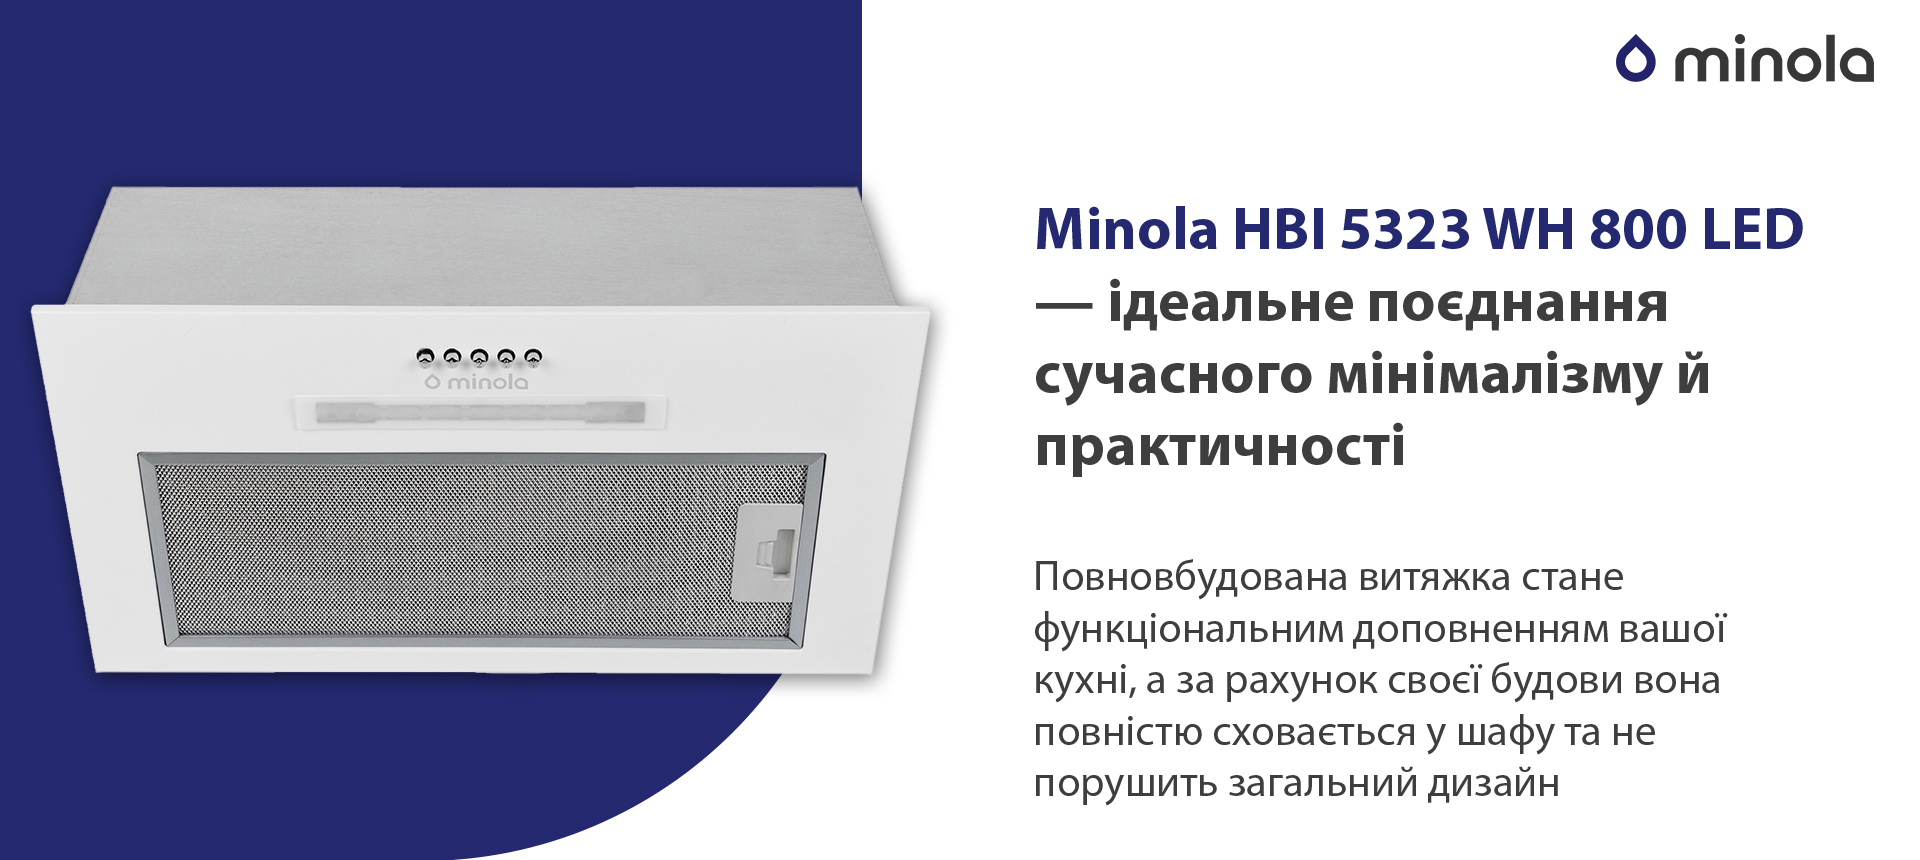 Minola HBI 5323 WH 800 LED в магазине в Киеве - фото 10